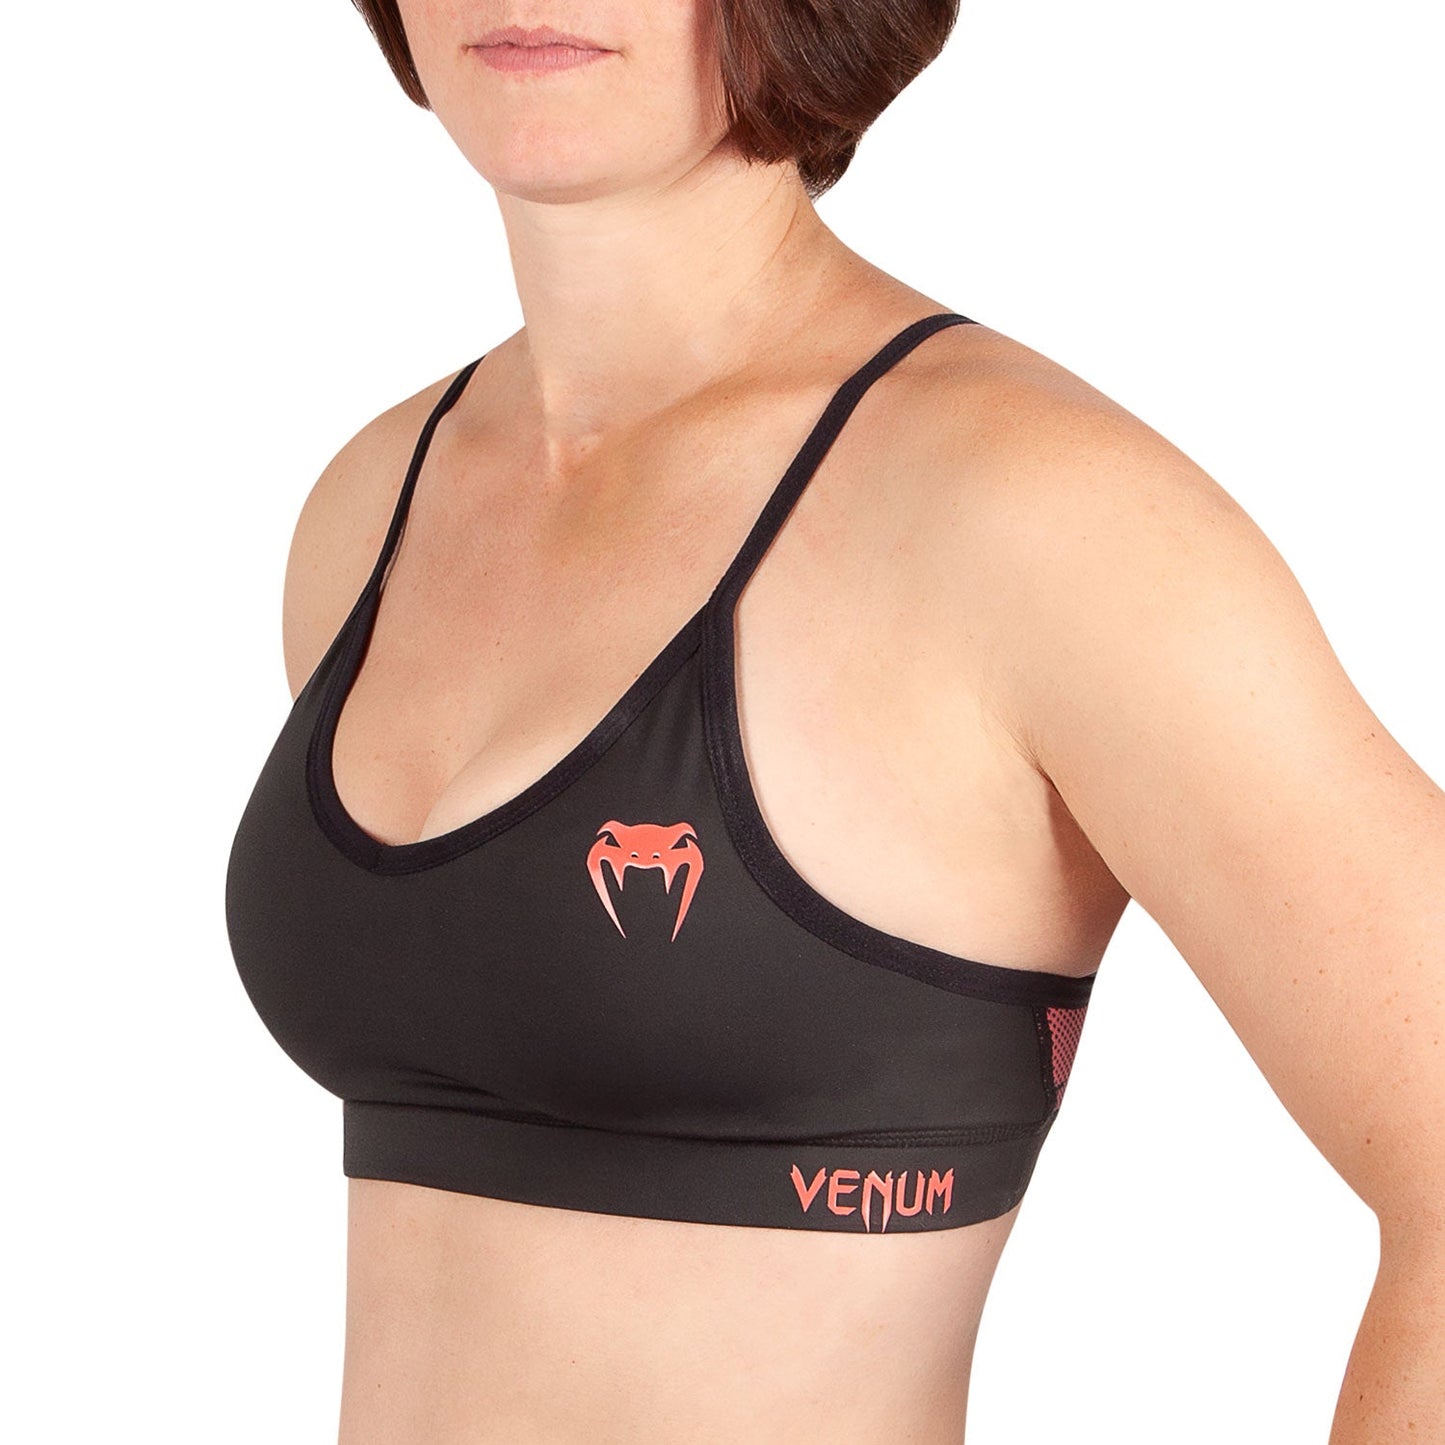 Venum Tecmo Sport Bra - For Women - Black/Coral